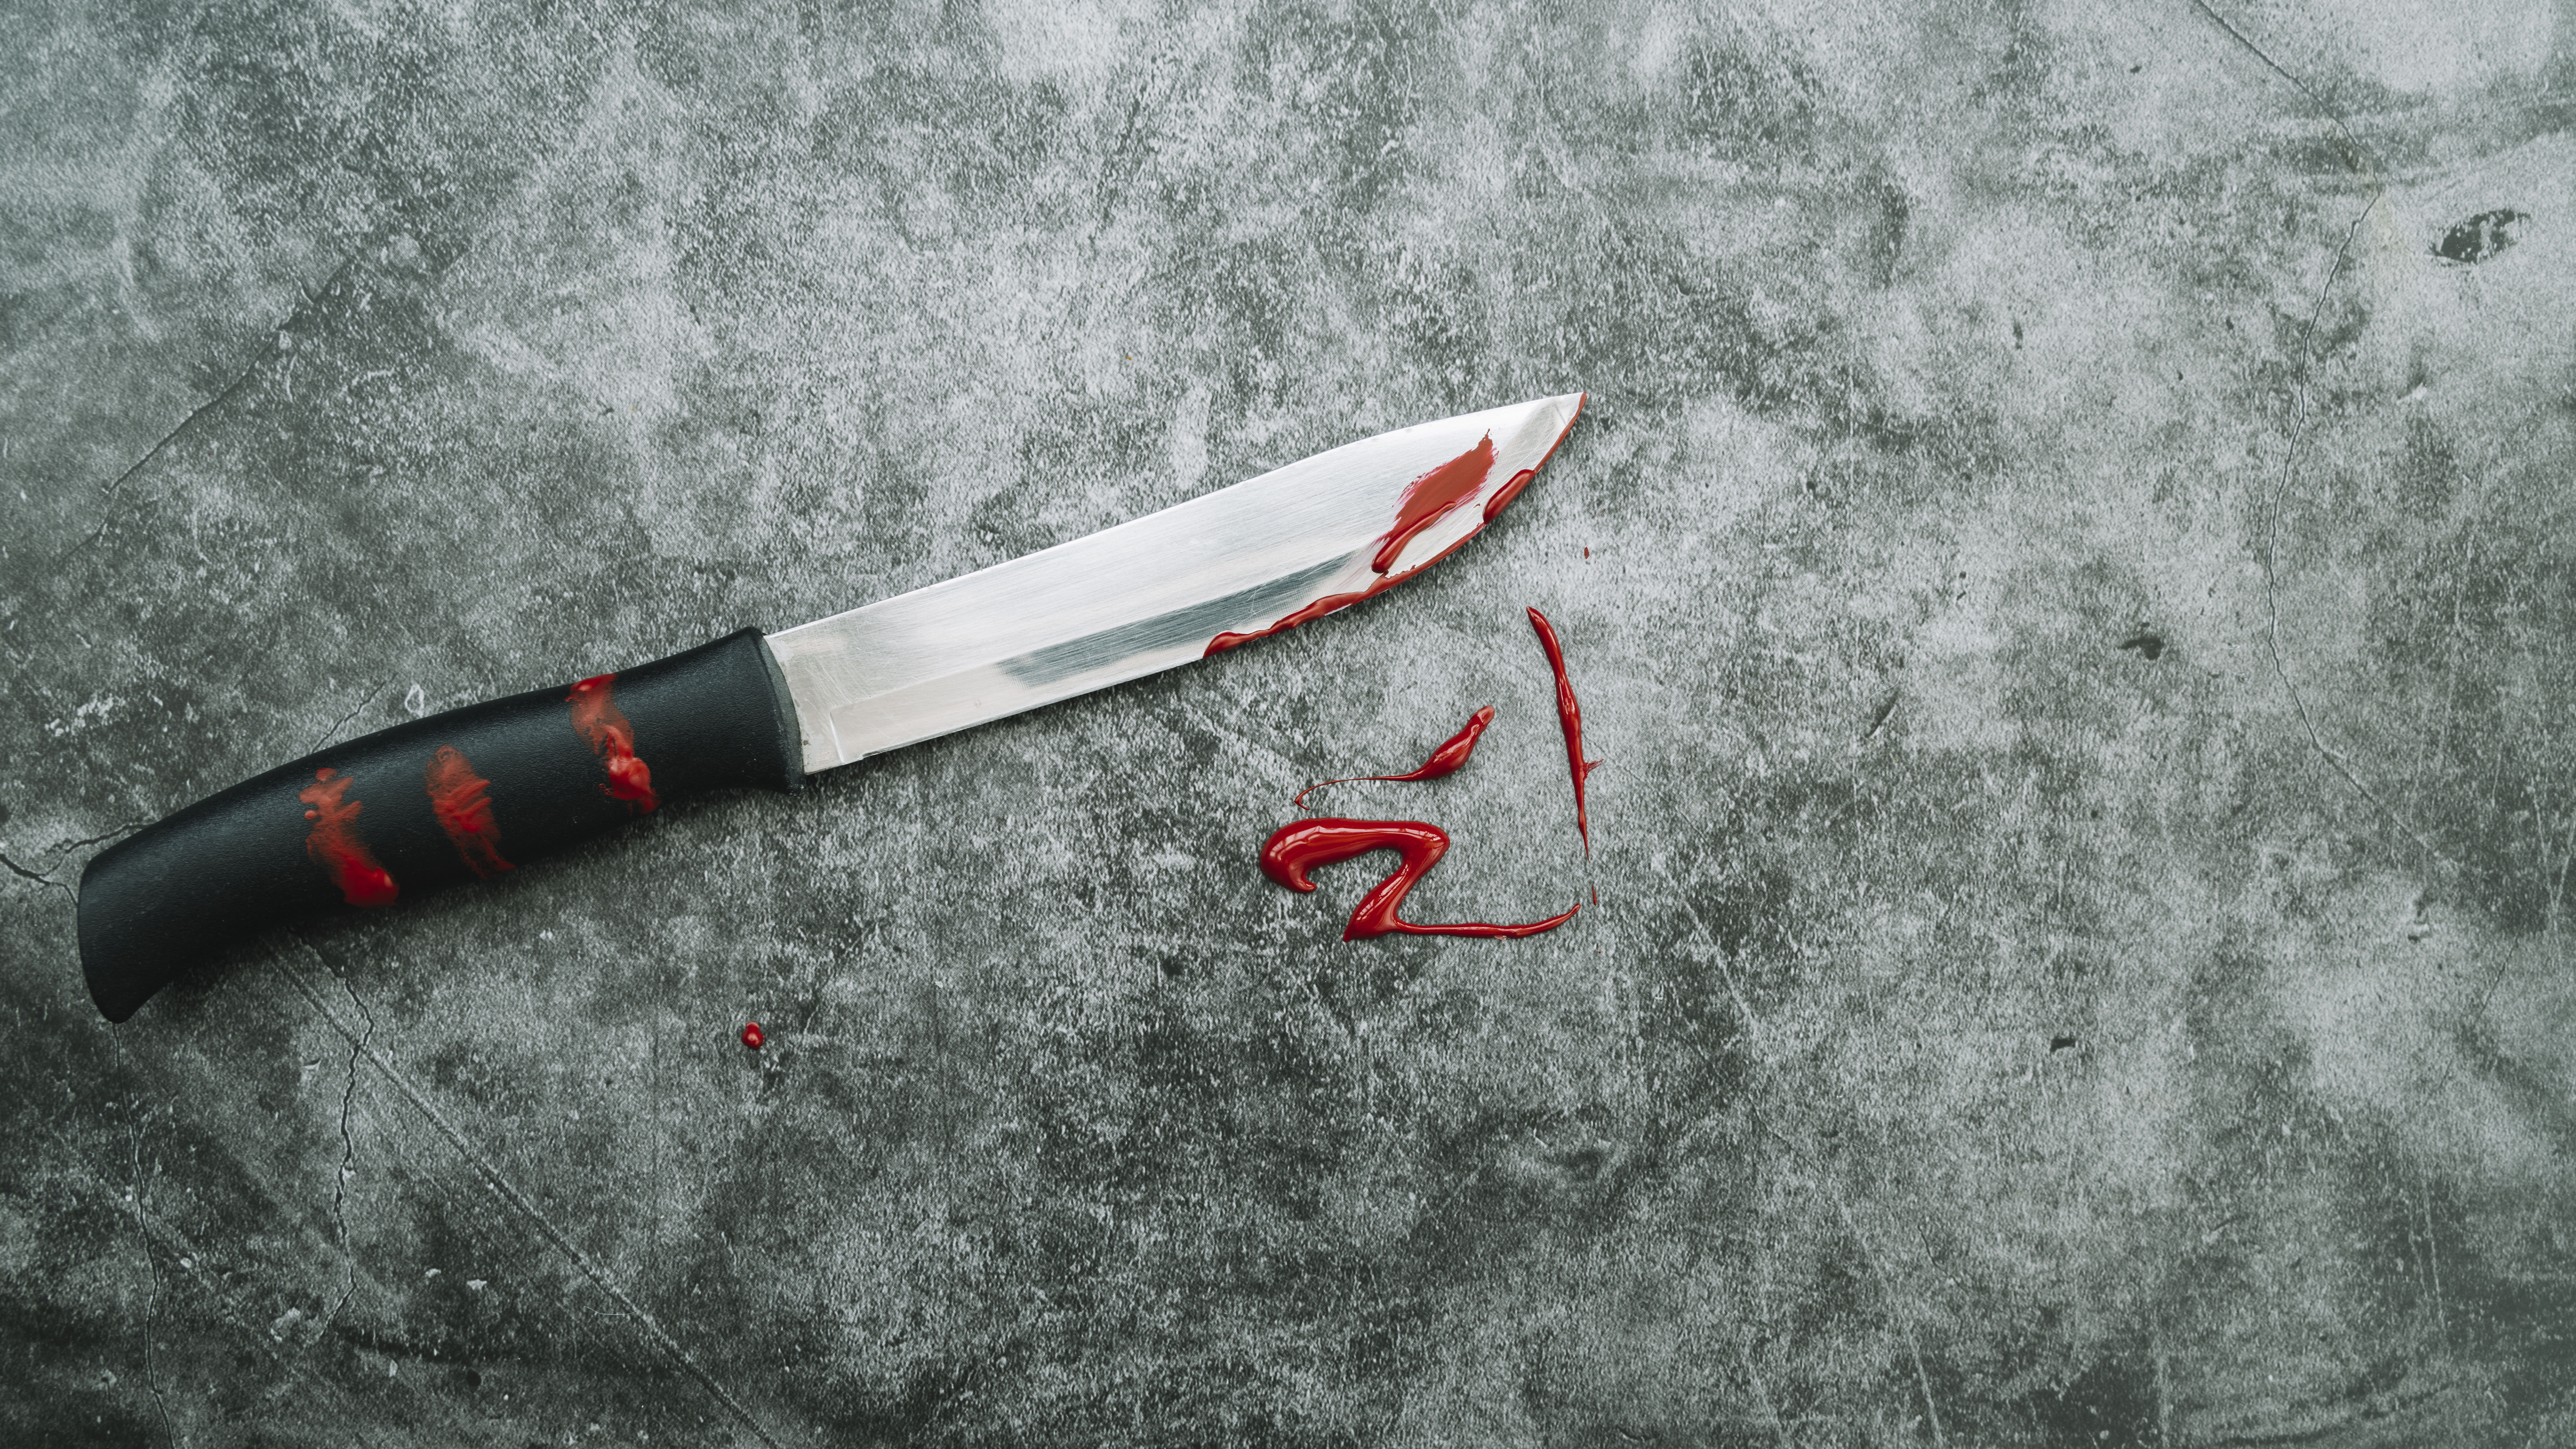 Новоульяновец убил знакомого одним ударом ножа: мужчина потерял много крови и умер на месте